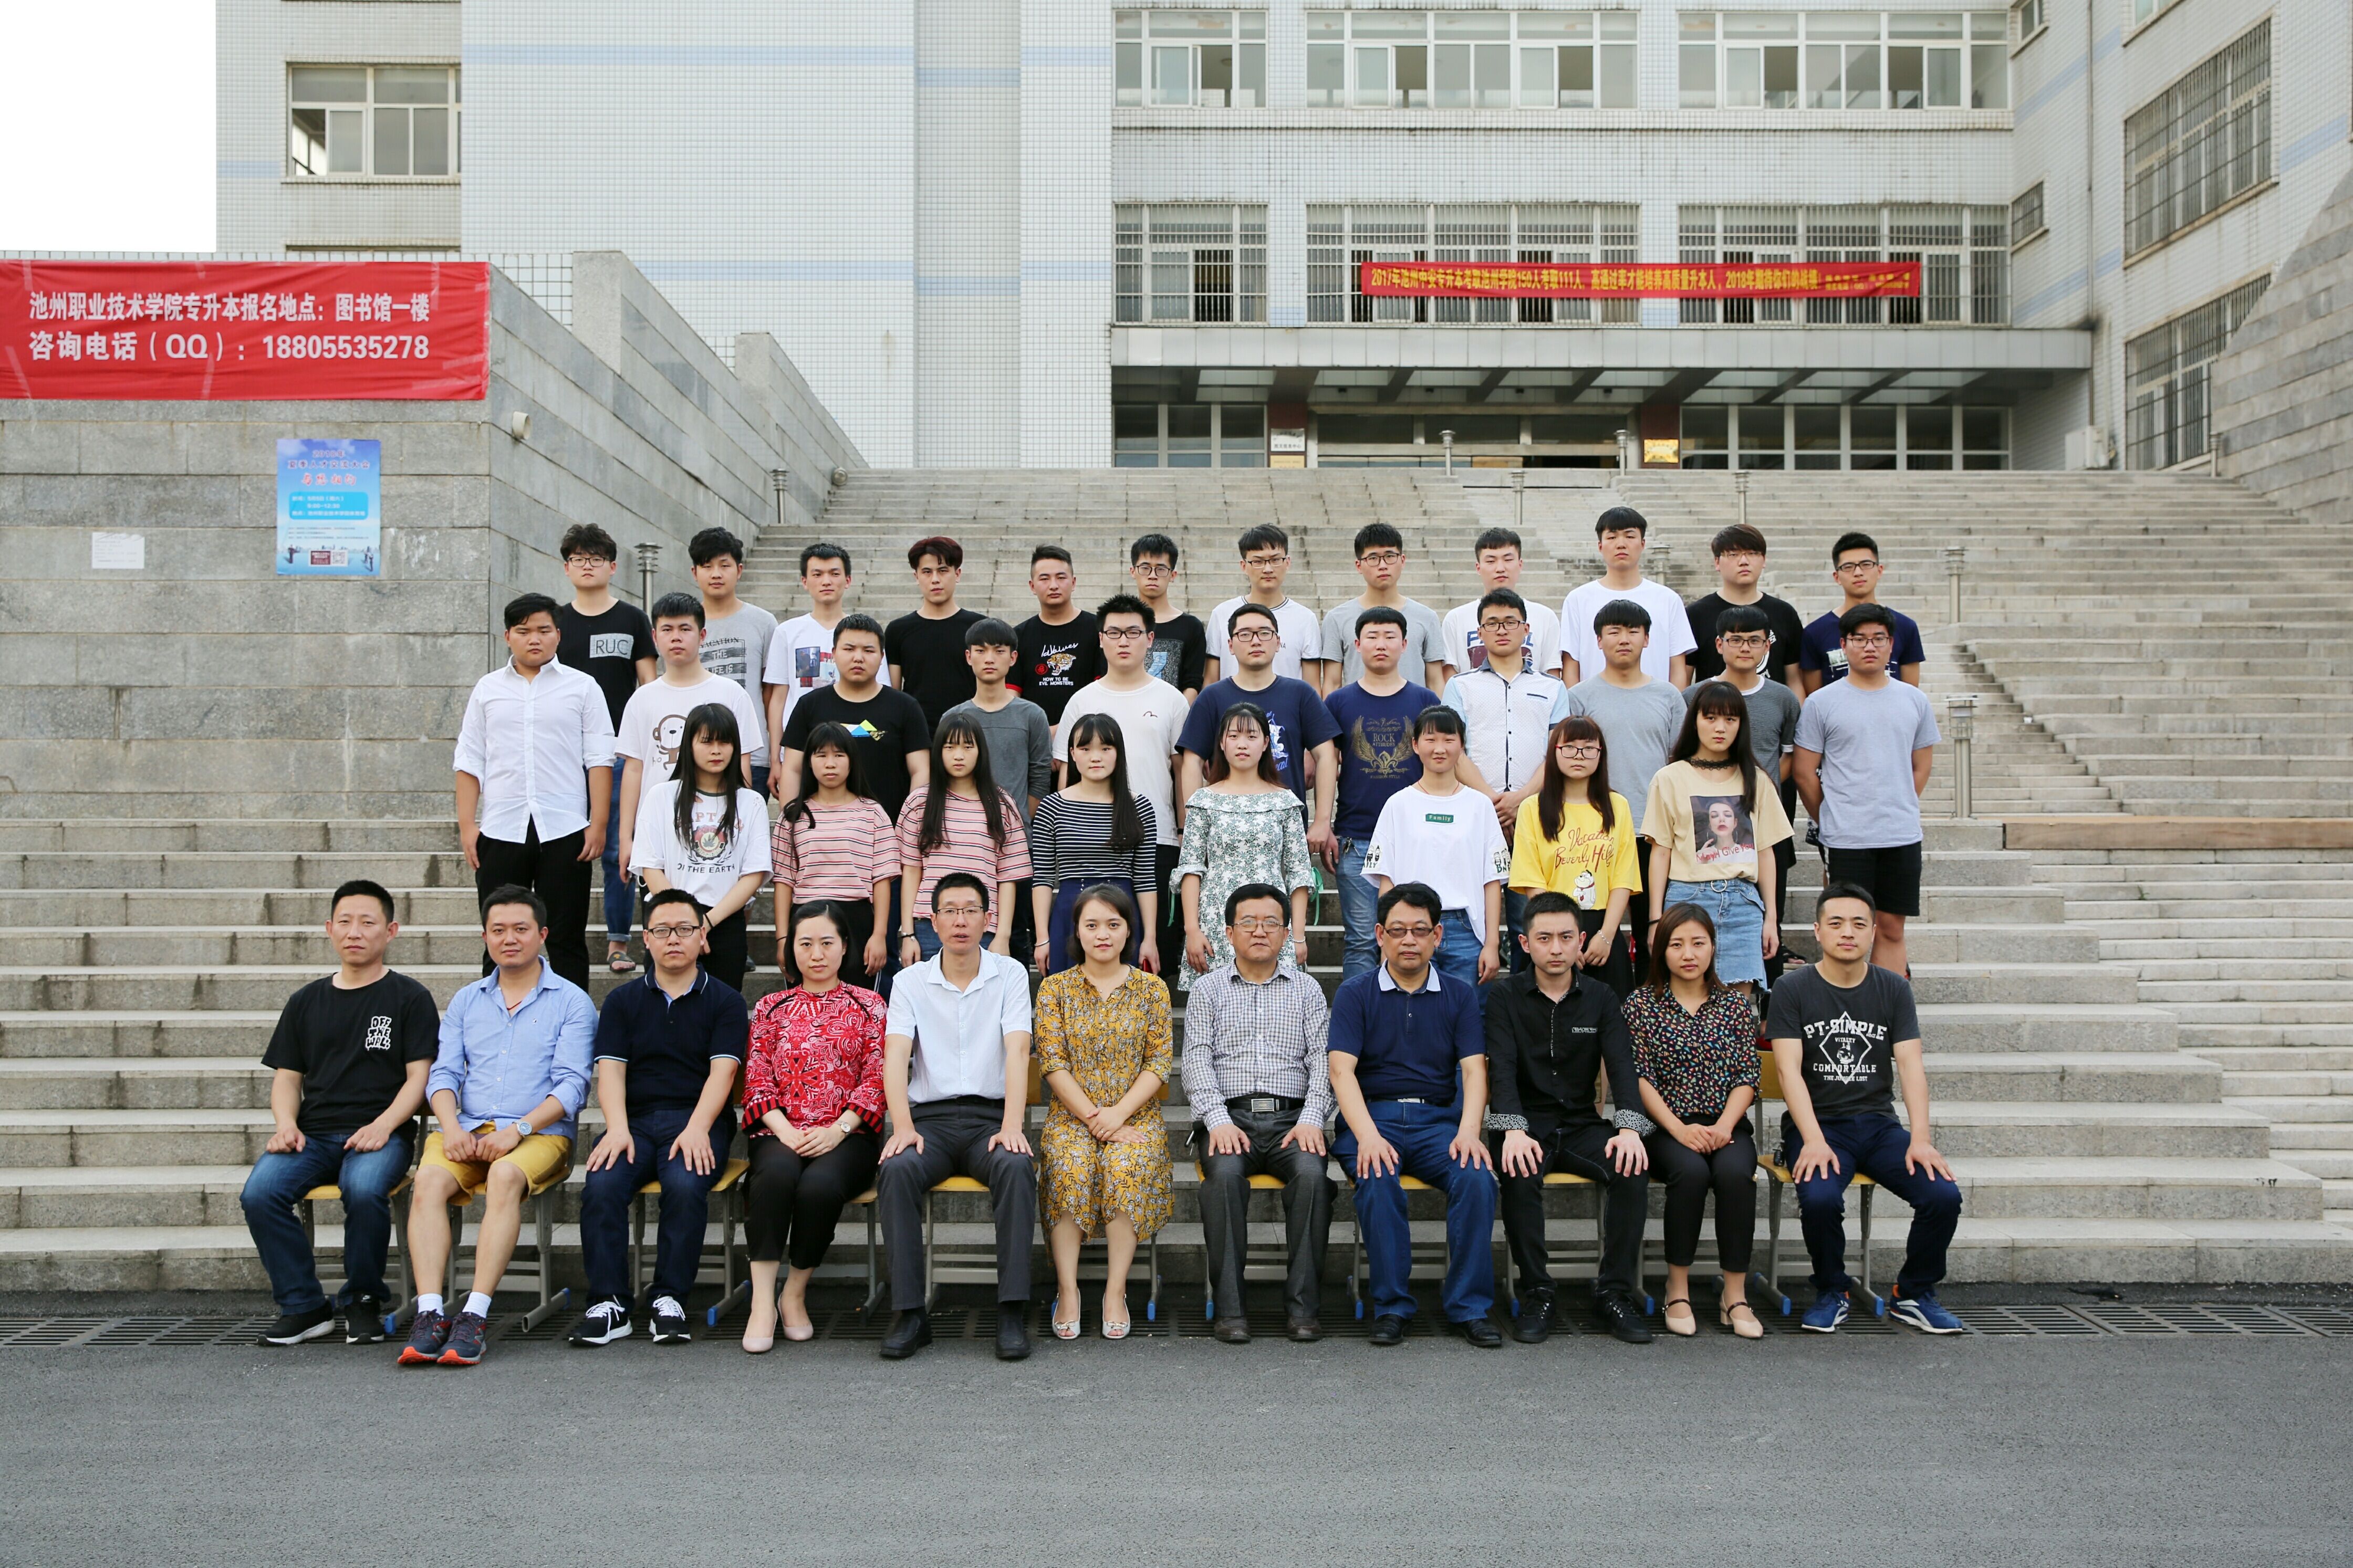 毕业季 -我们的那些年 - 中国摄影出版传媒有限责任公司